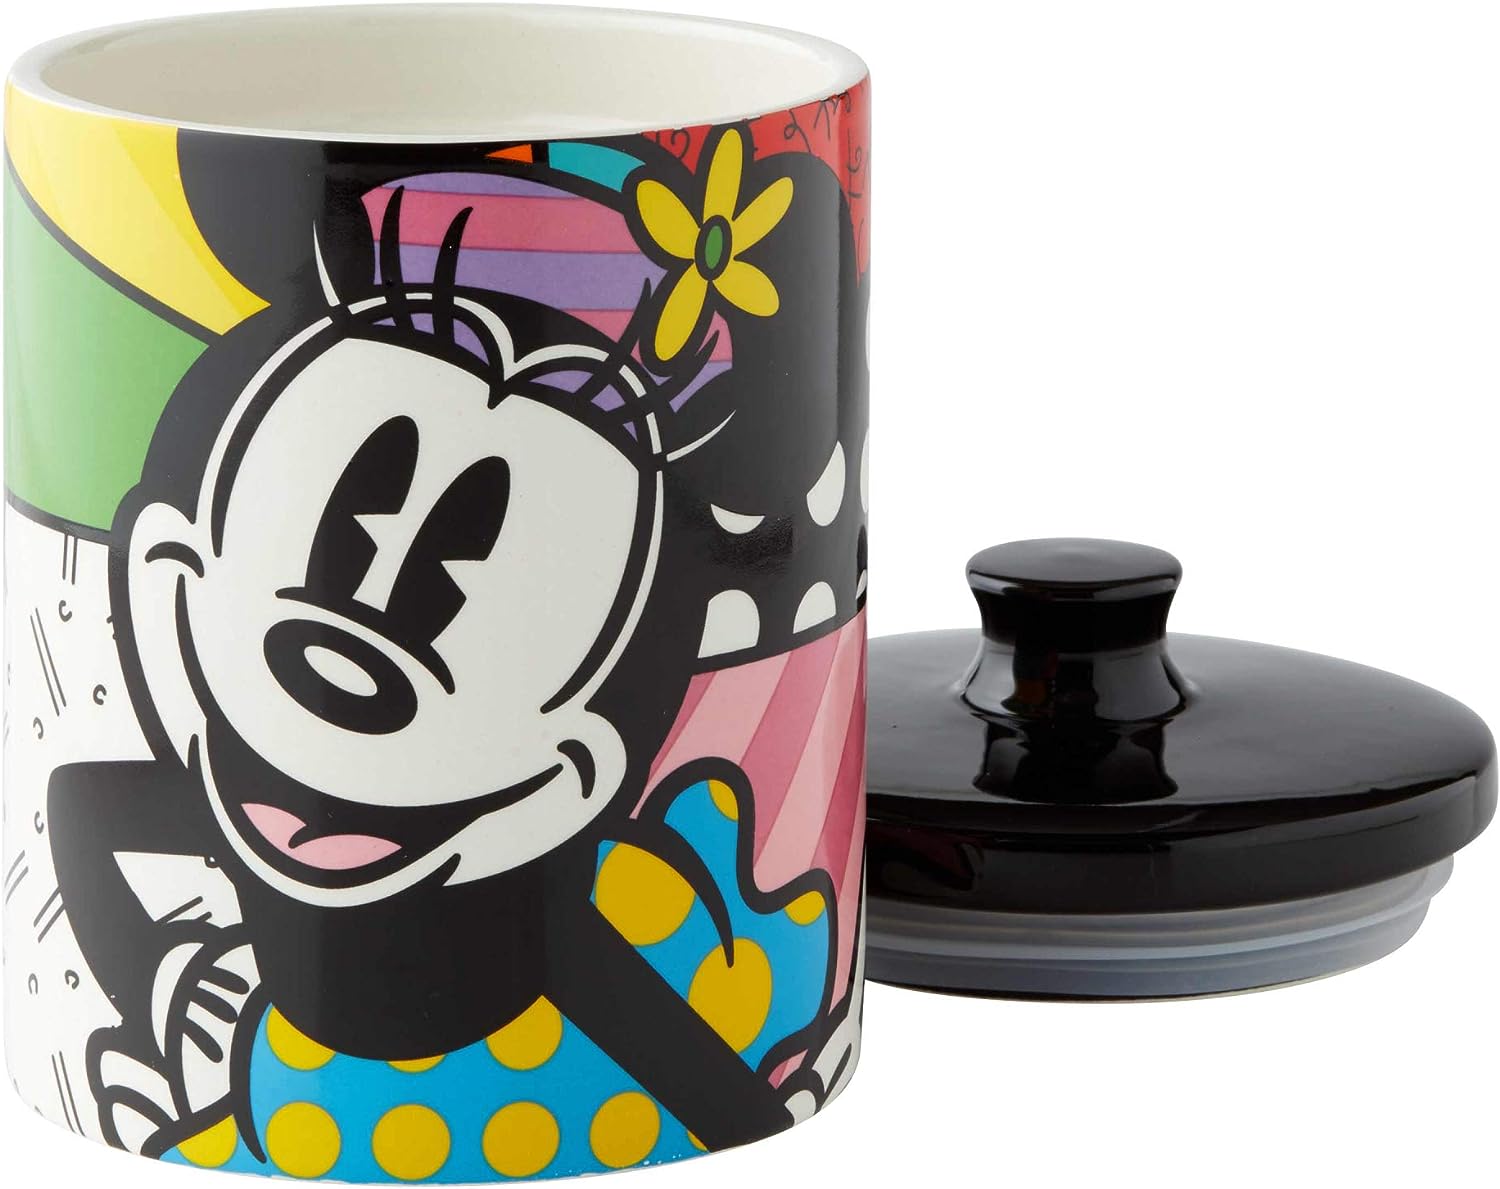 Minnie-Mouse-Keksdose-Disney-by-Britto-berlindeluxe-miiniemaus-deckel